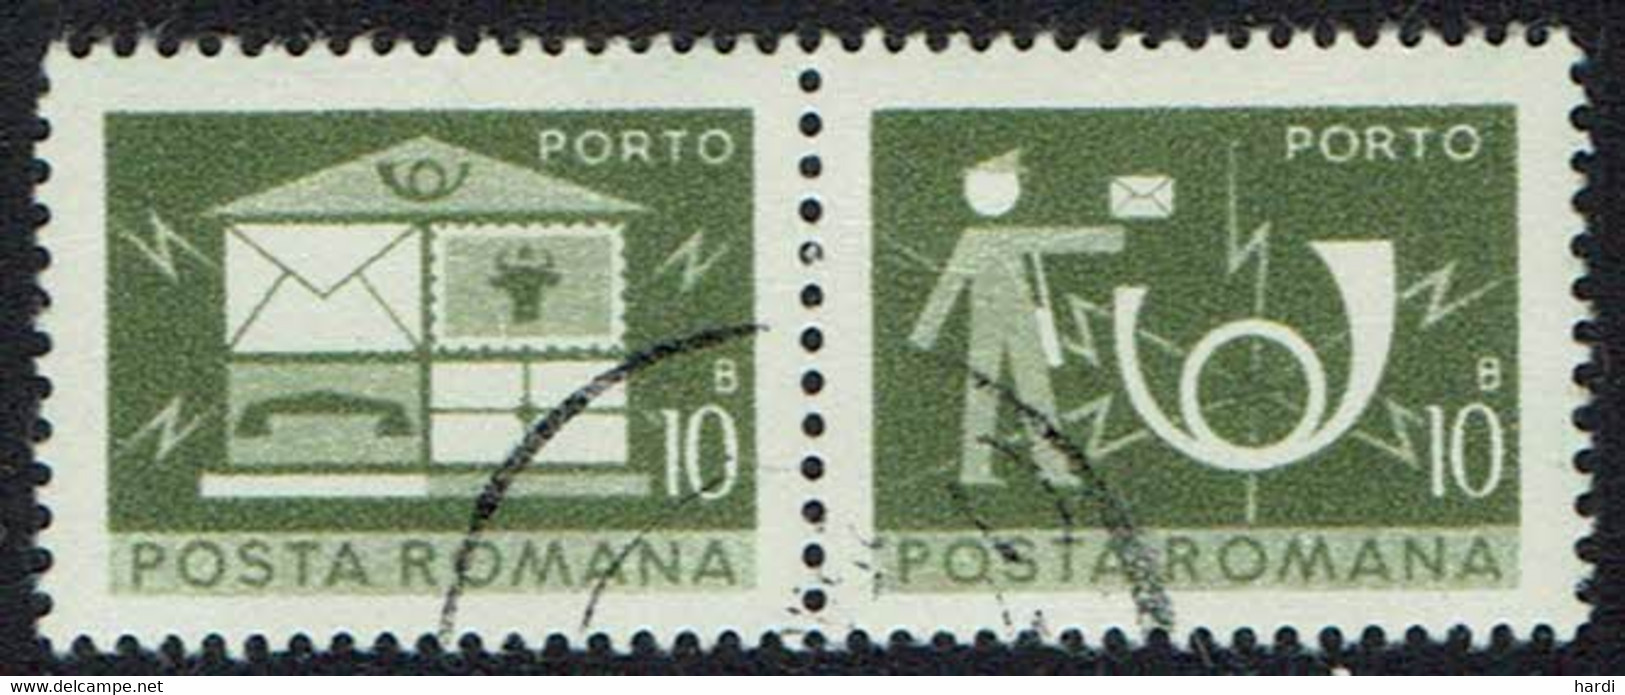 Rumänien Portomarken 1974, Mi.Nr 120, Gestempelt - Portomarken